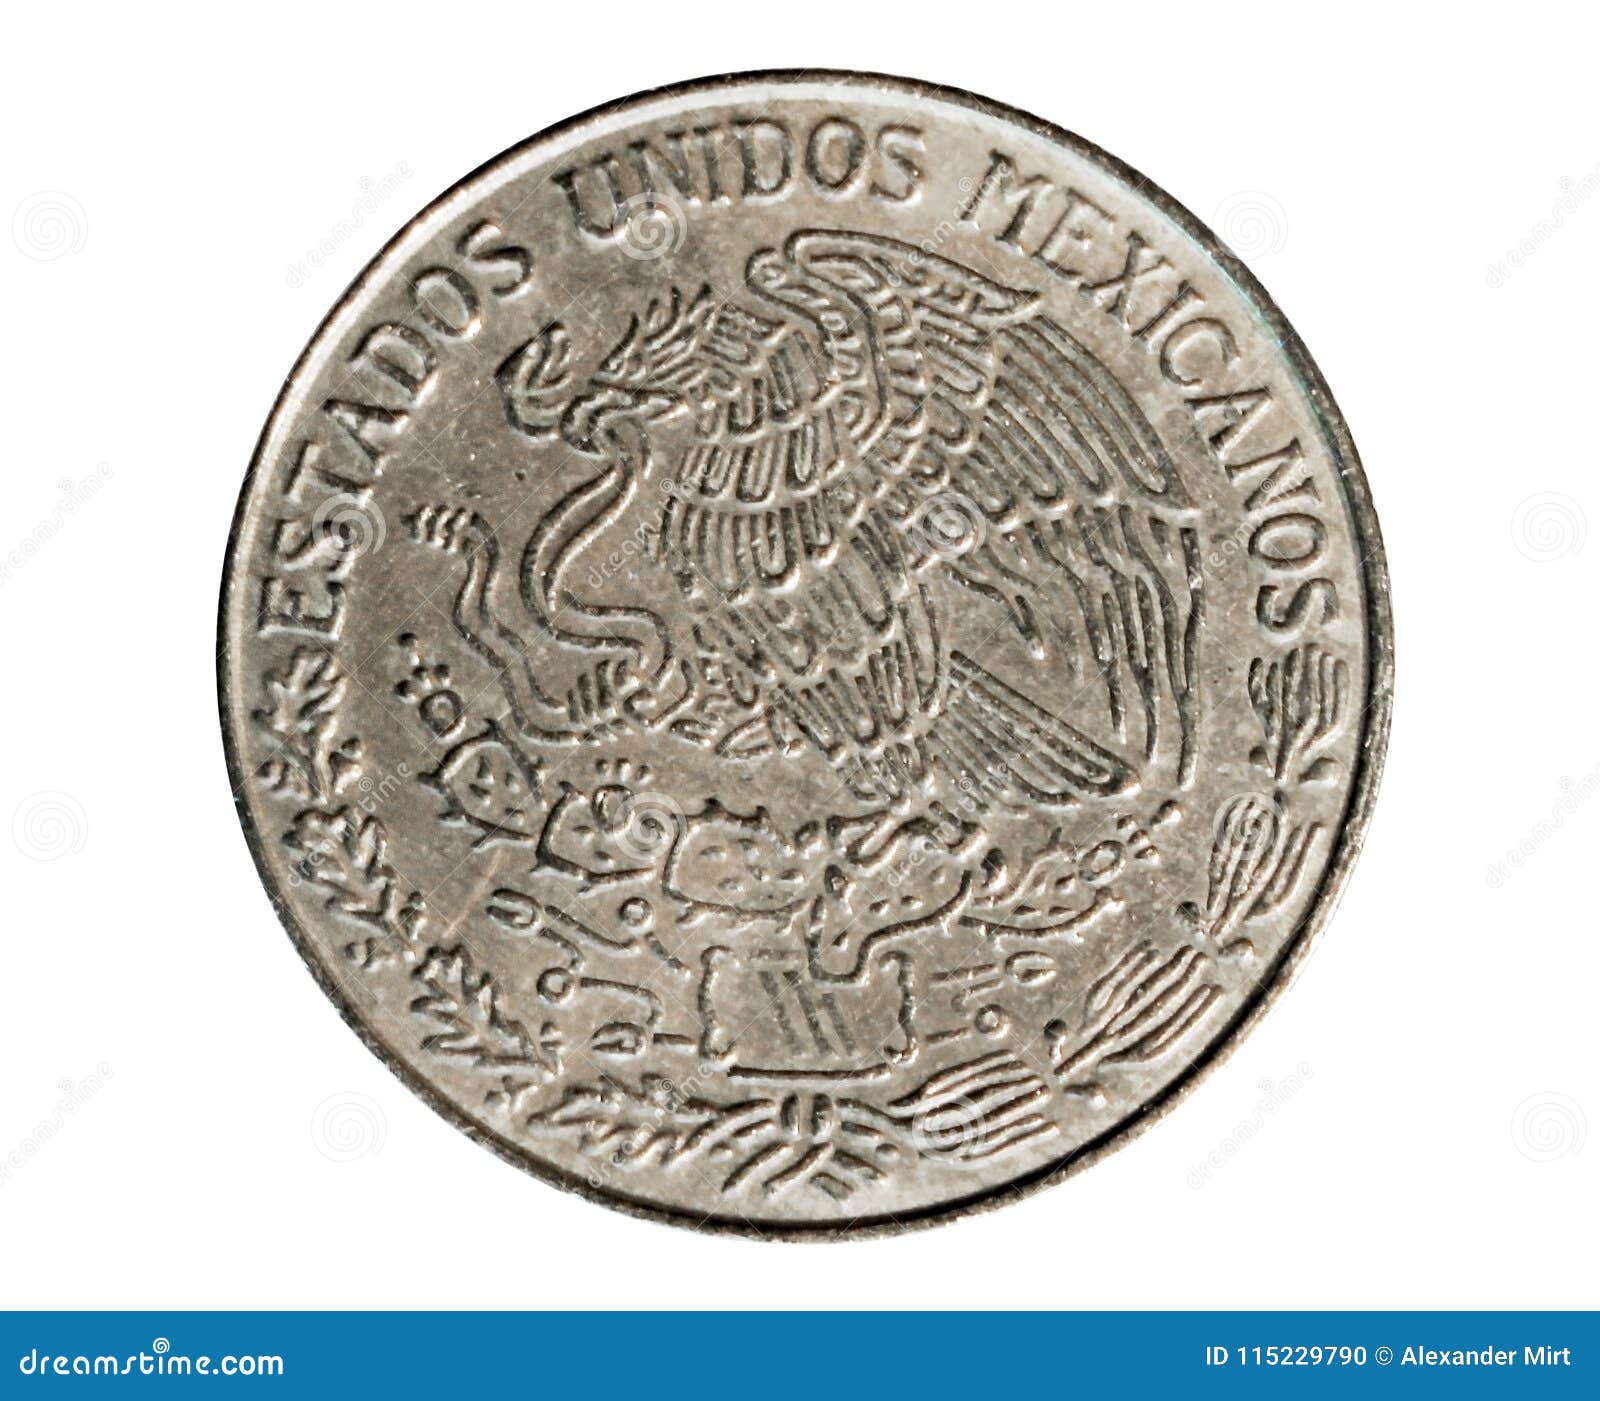 1 peso coin (estados unidos mexicanos circulation). bank of mexico. reverse, 1978